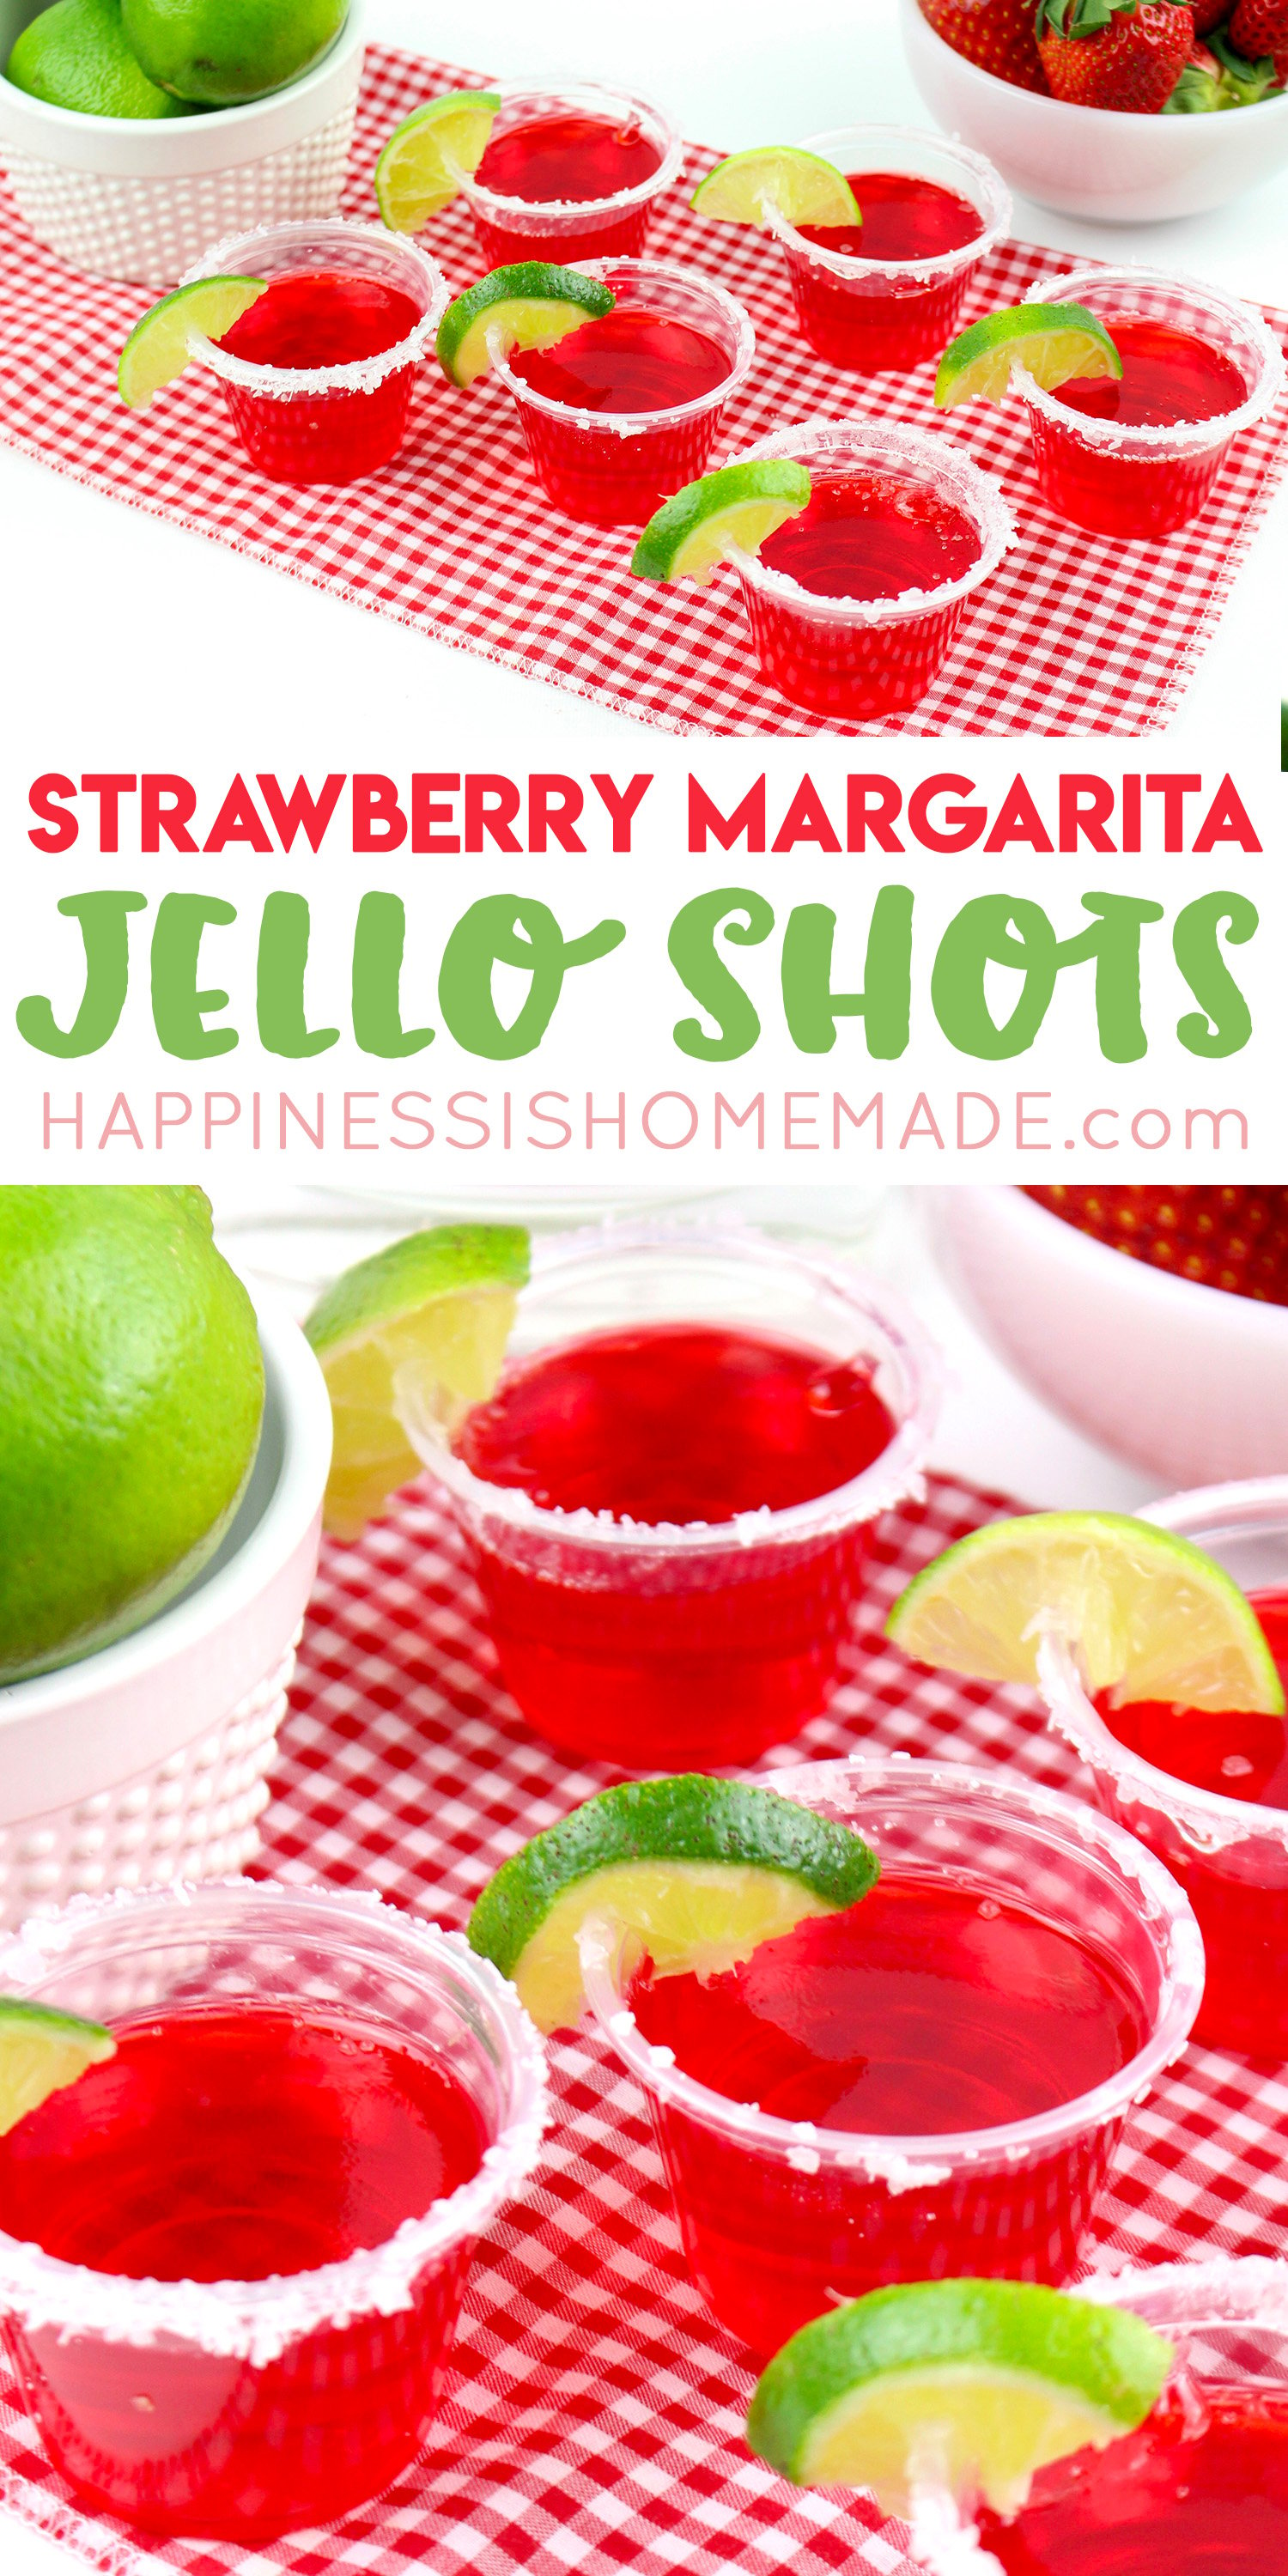 Strawberry Margarita Jello Shots Happiness Is Homemade,Brandy Alexander Nrl